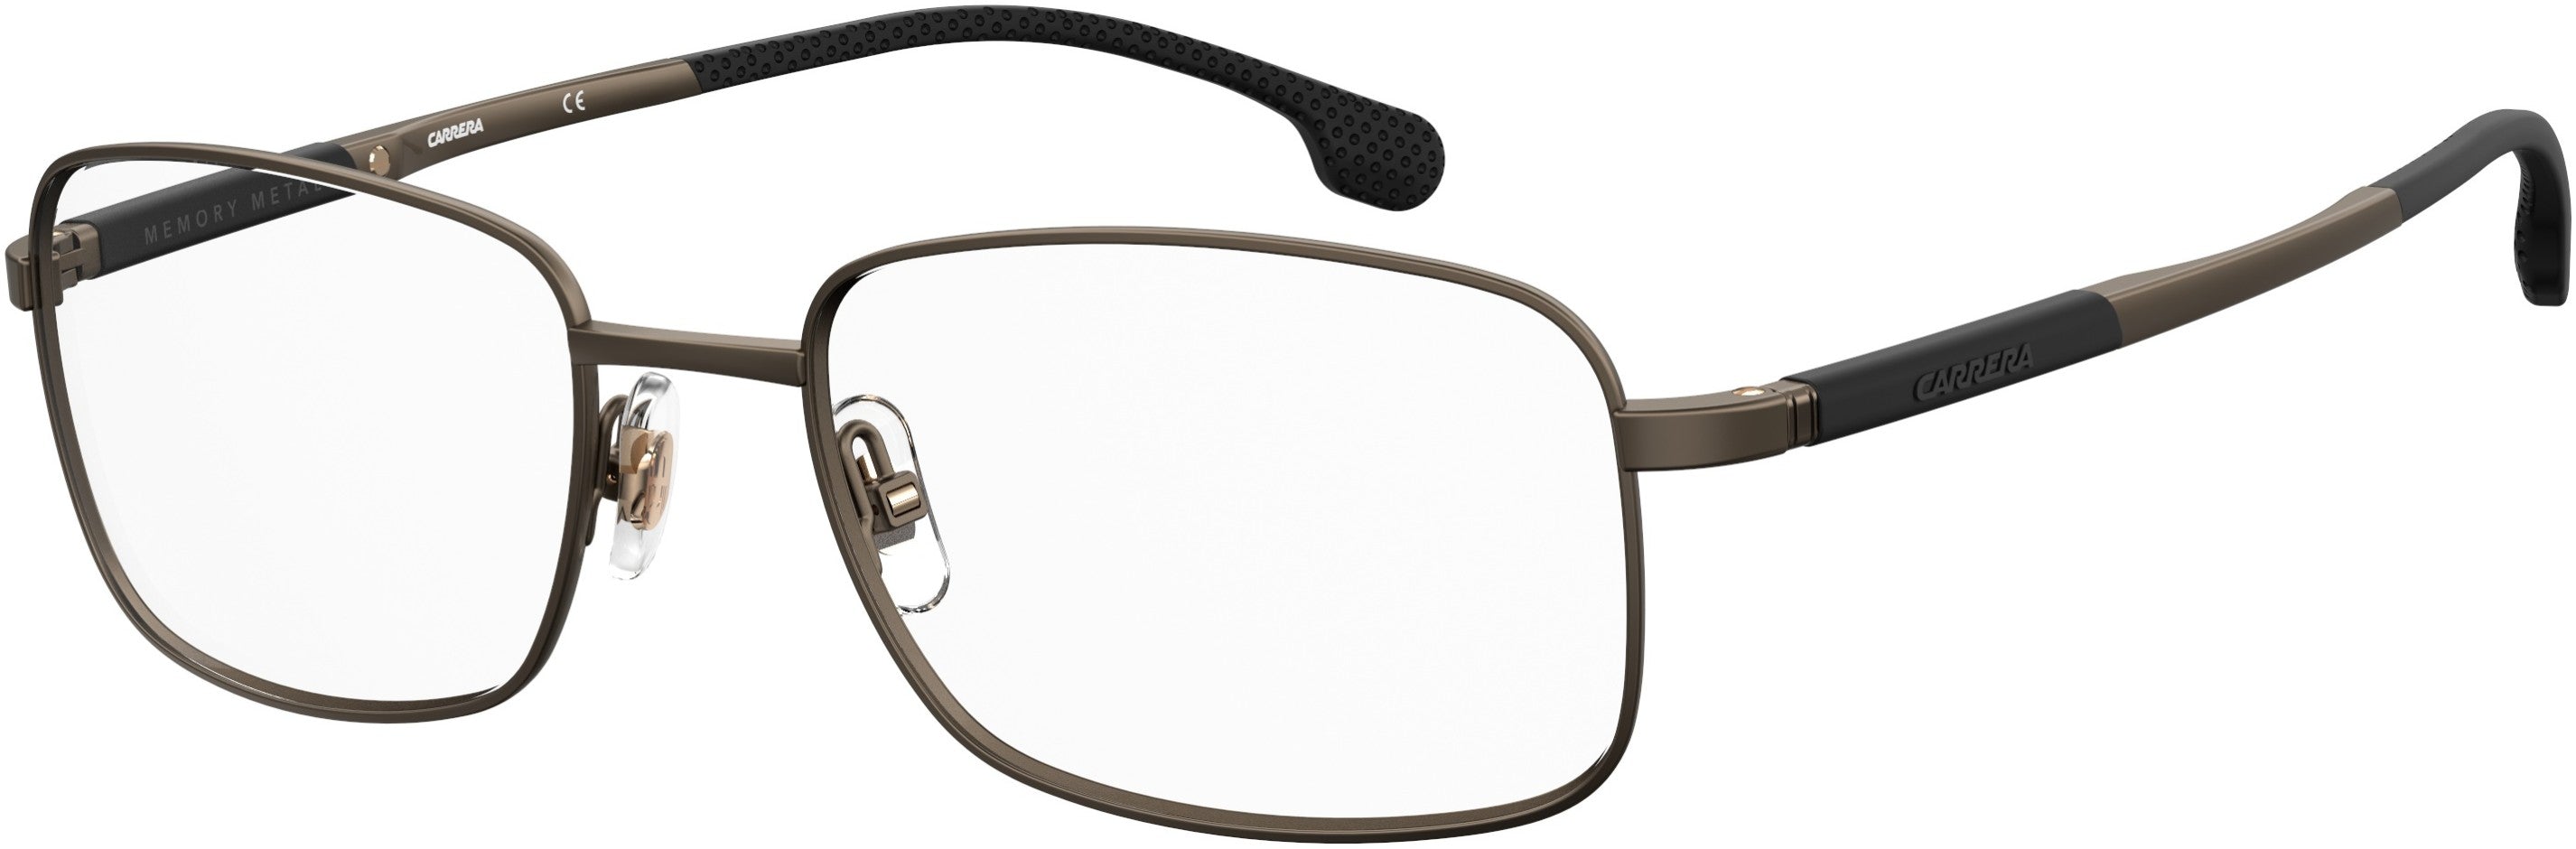  Carrera 8848 Rectangular Eyeglasses 0VZH-0VZH  Matte Bronze (00 Demo Lens)